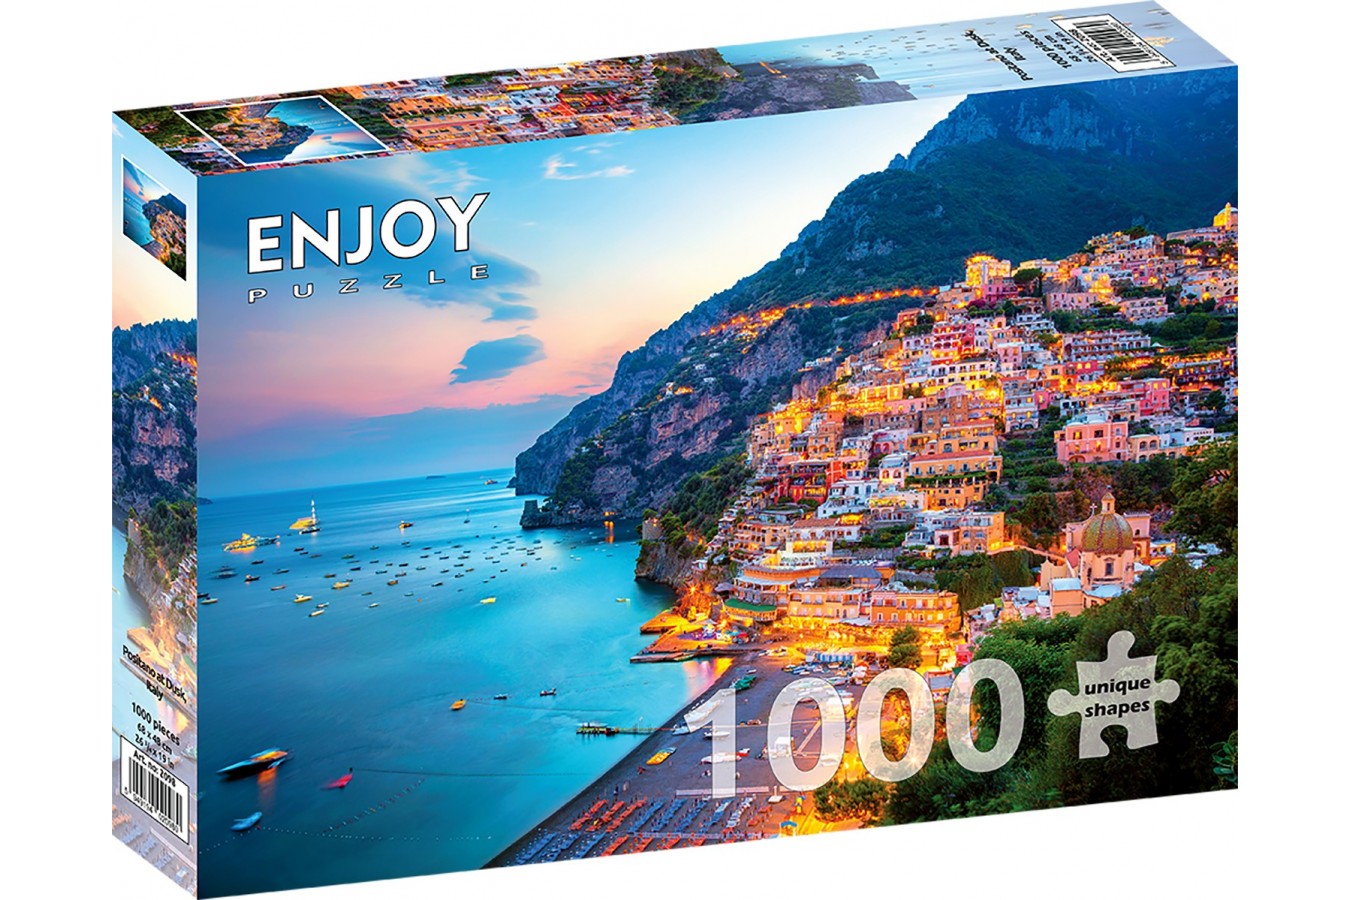 Puzzle 1000 piese ENJOY - Positano at Dusk, Italy (Enjoy-2098)